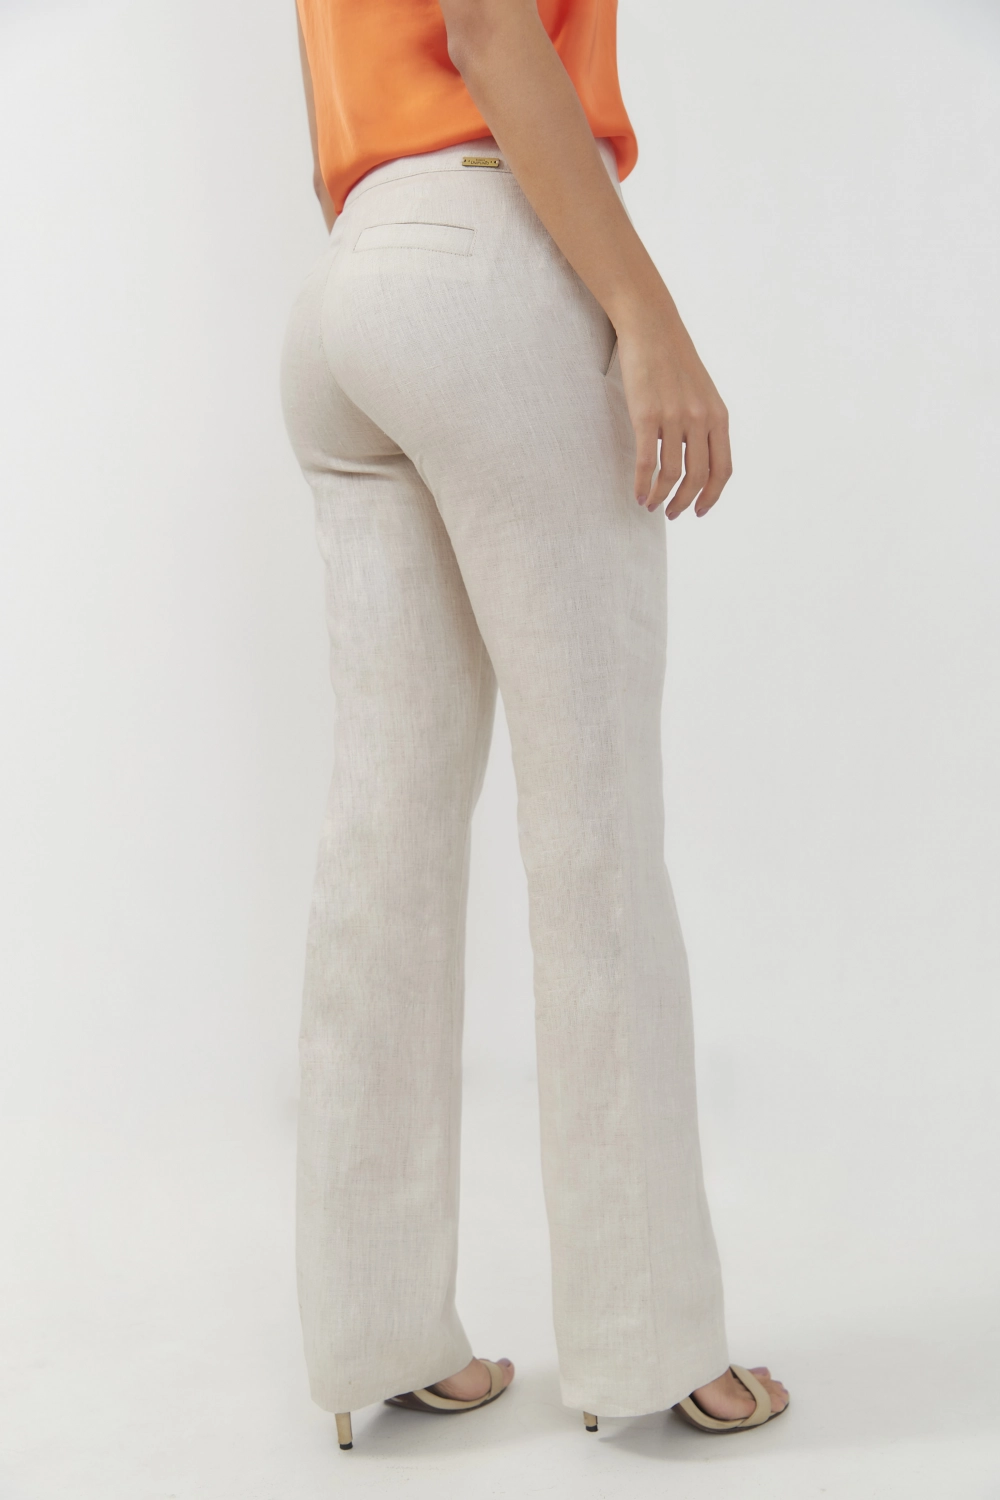 Pantalón básico slim en lino tiro-medio. Natural talla 12